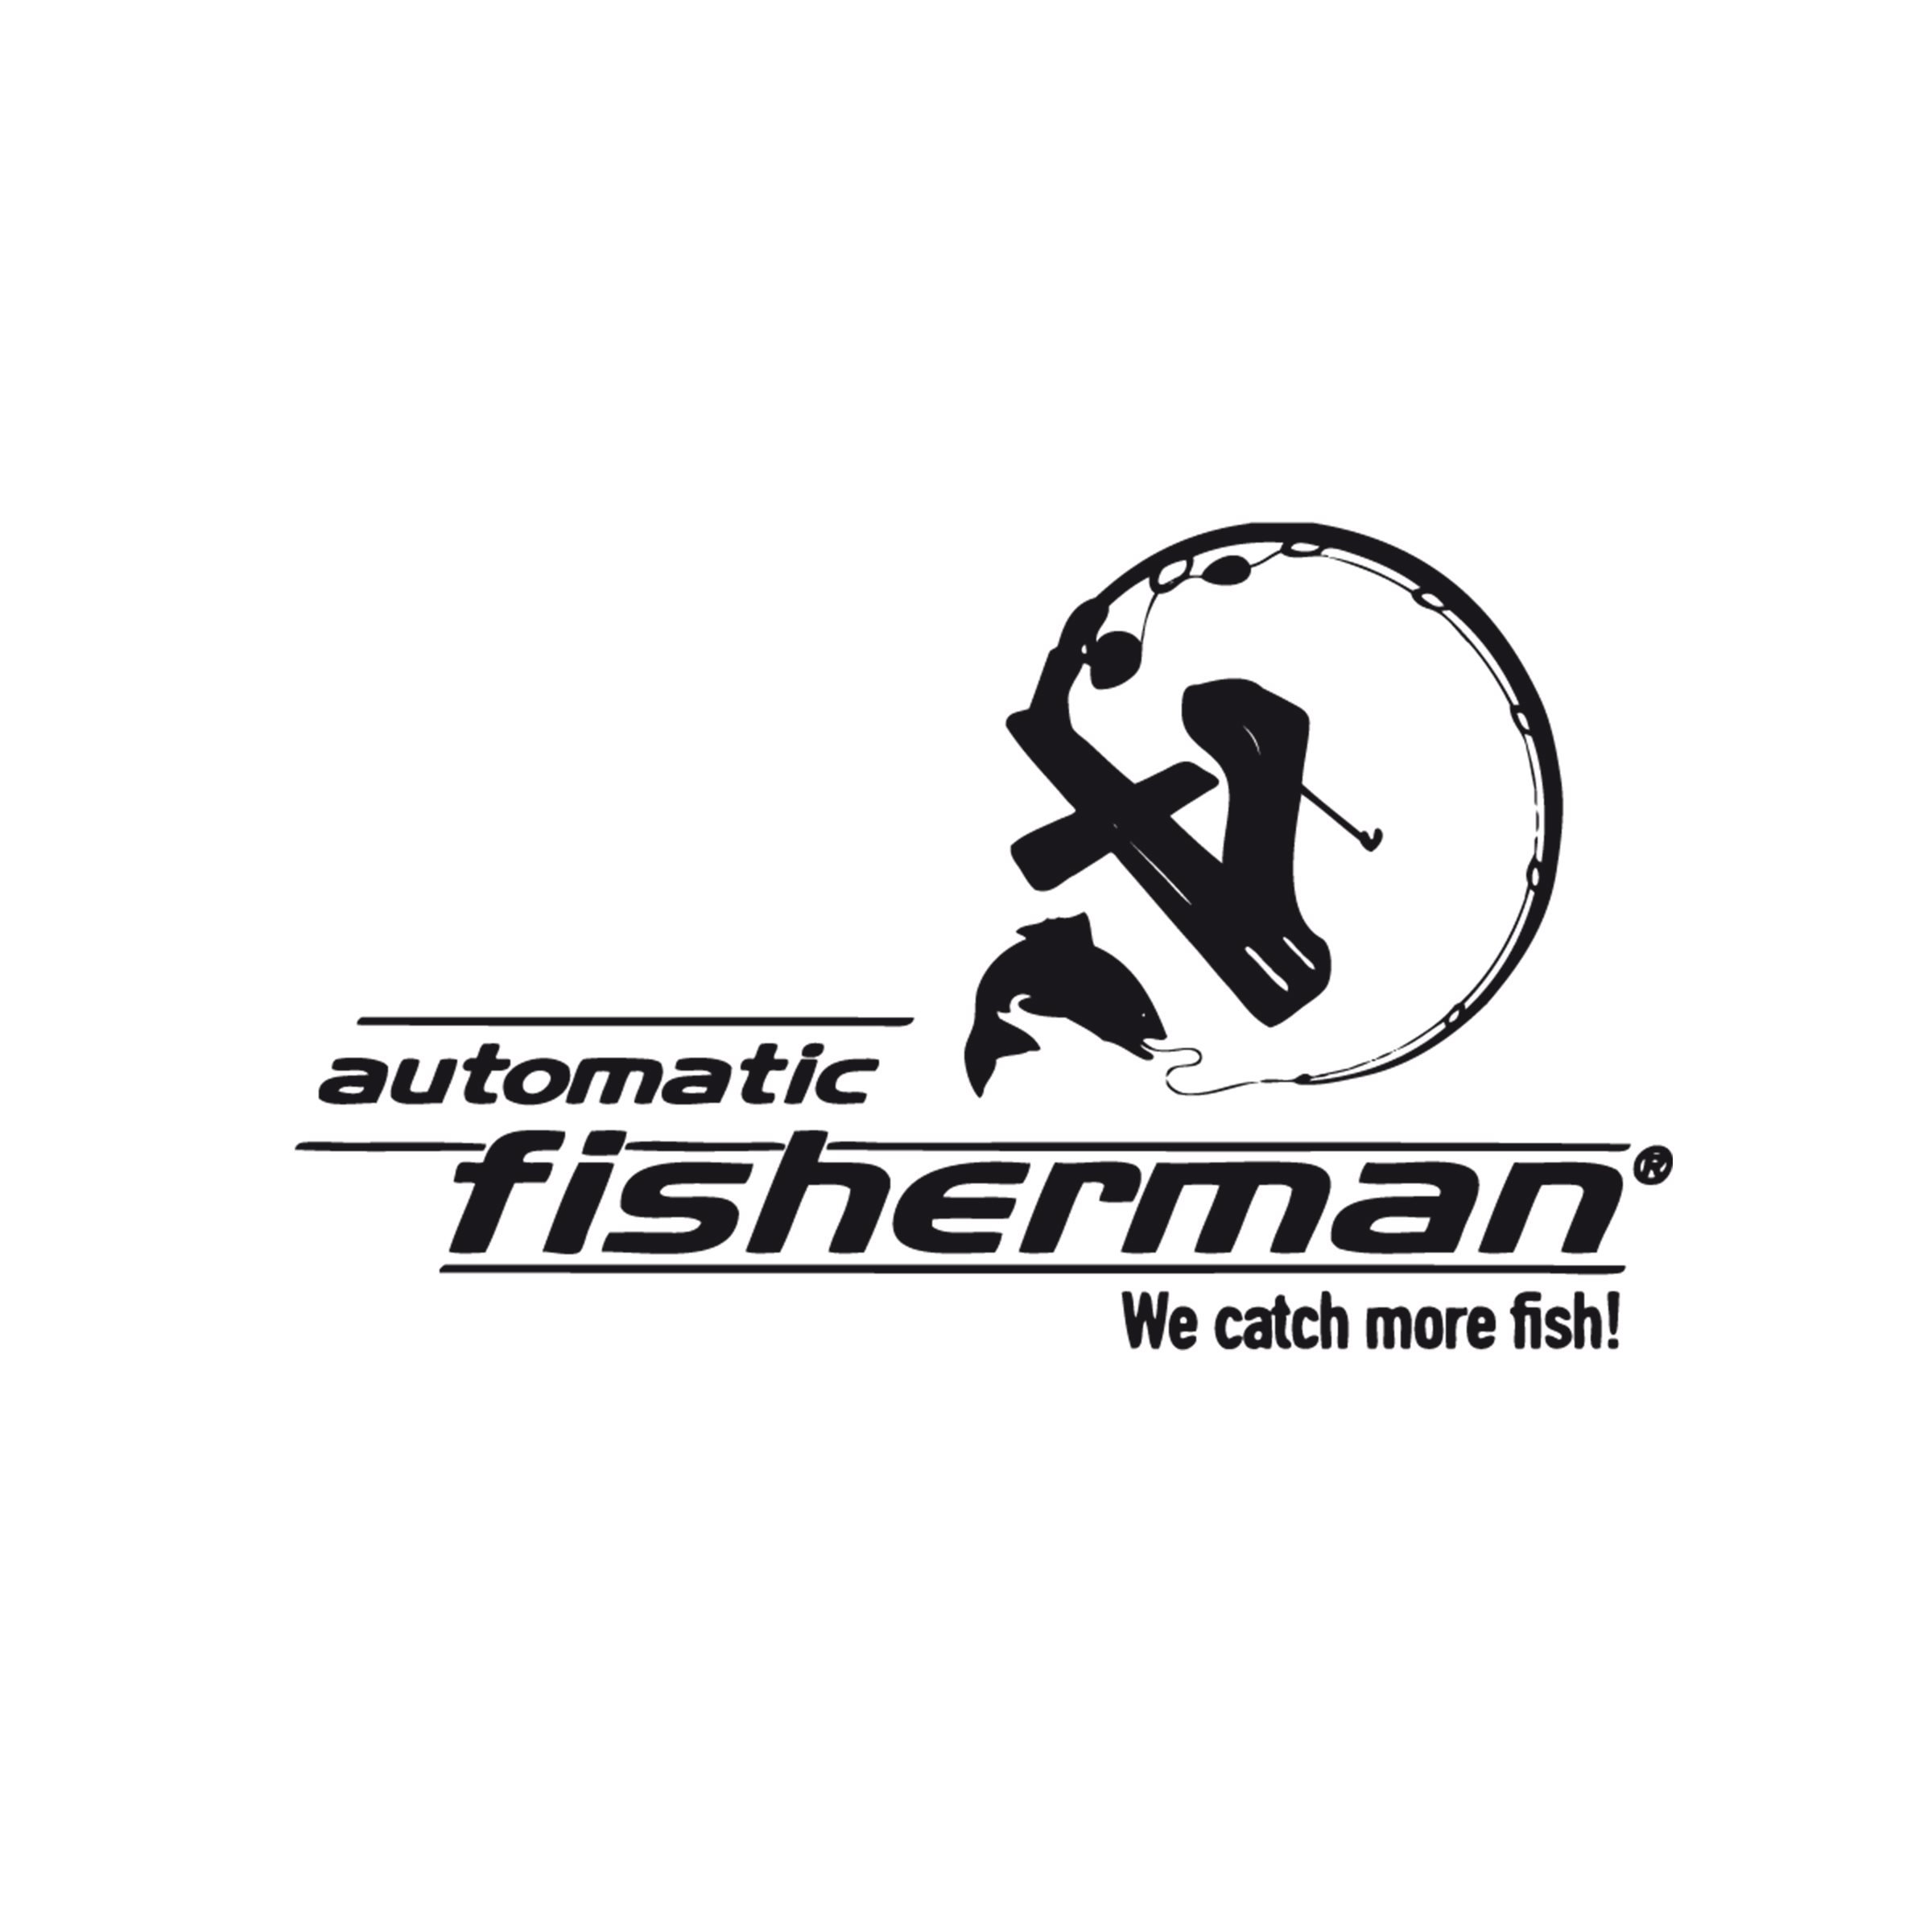 A_Automatic_Fisherman